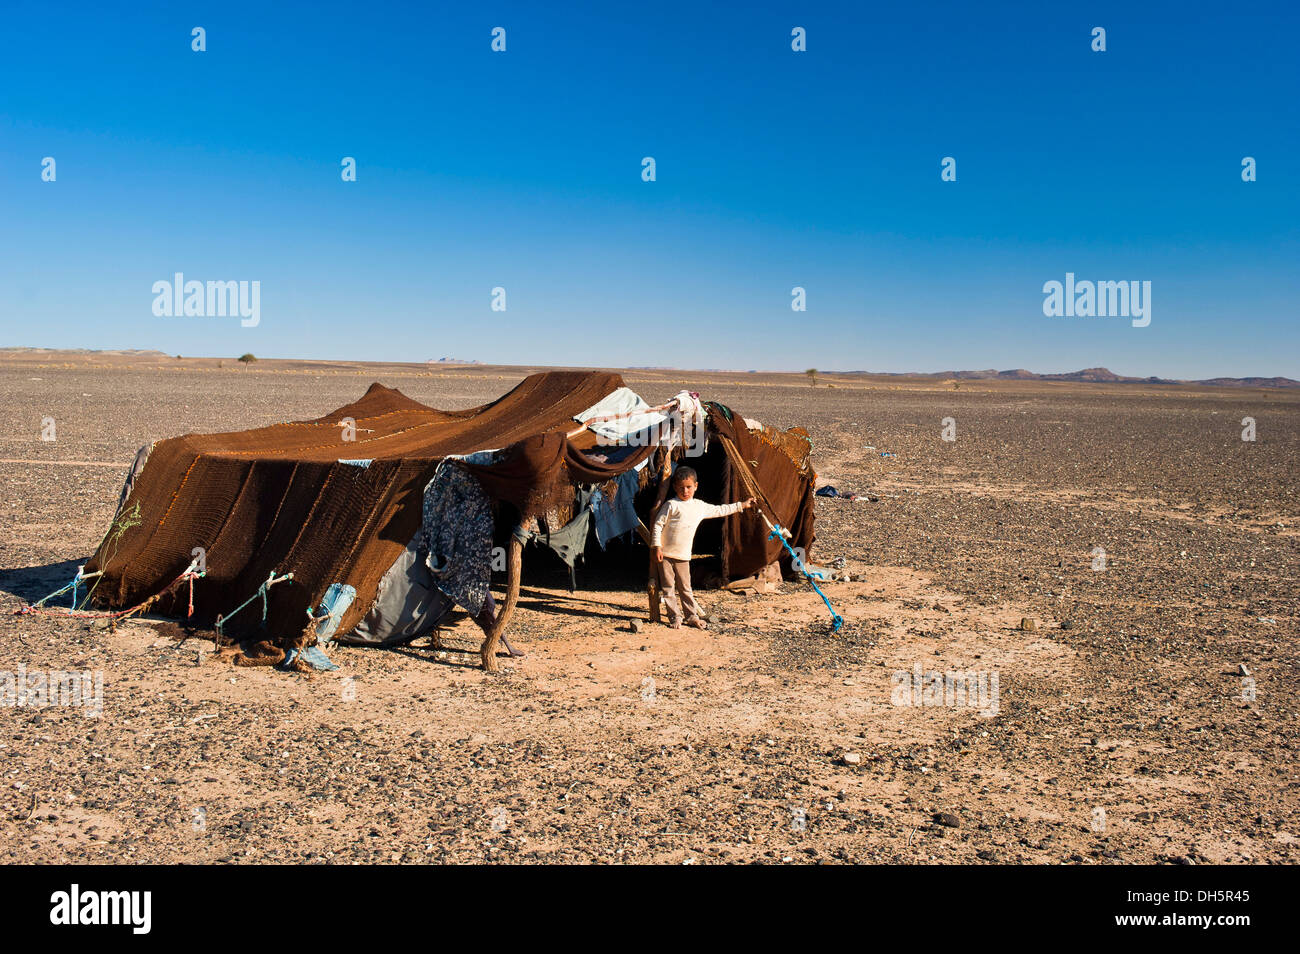 Jeune garçon debout devant la tente de sa famille nomade, pierre désert, Hamada, l'Erg Chebbi, dans le sud du Maroc, Maroc Banque D'Images